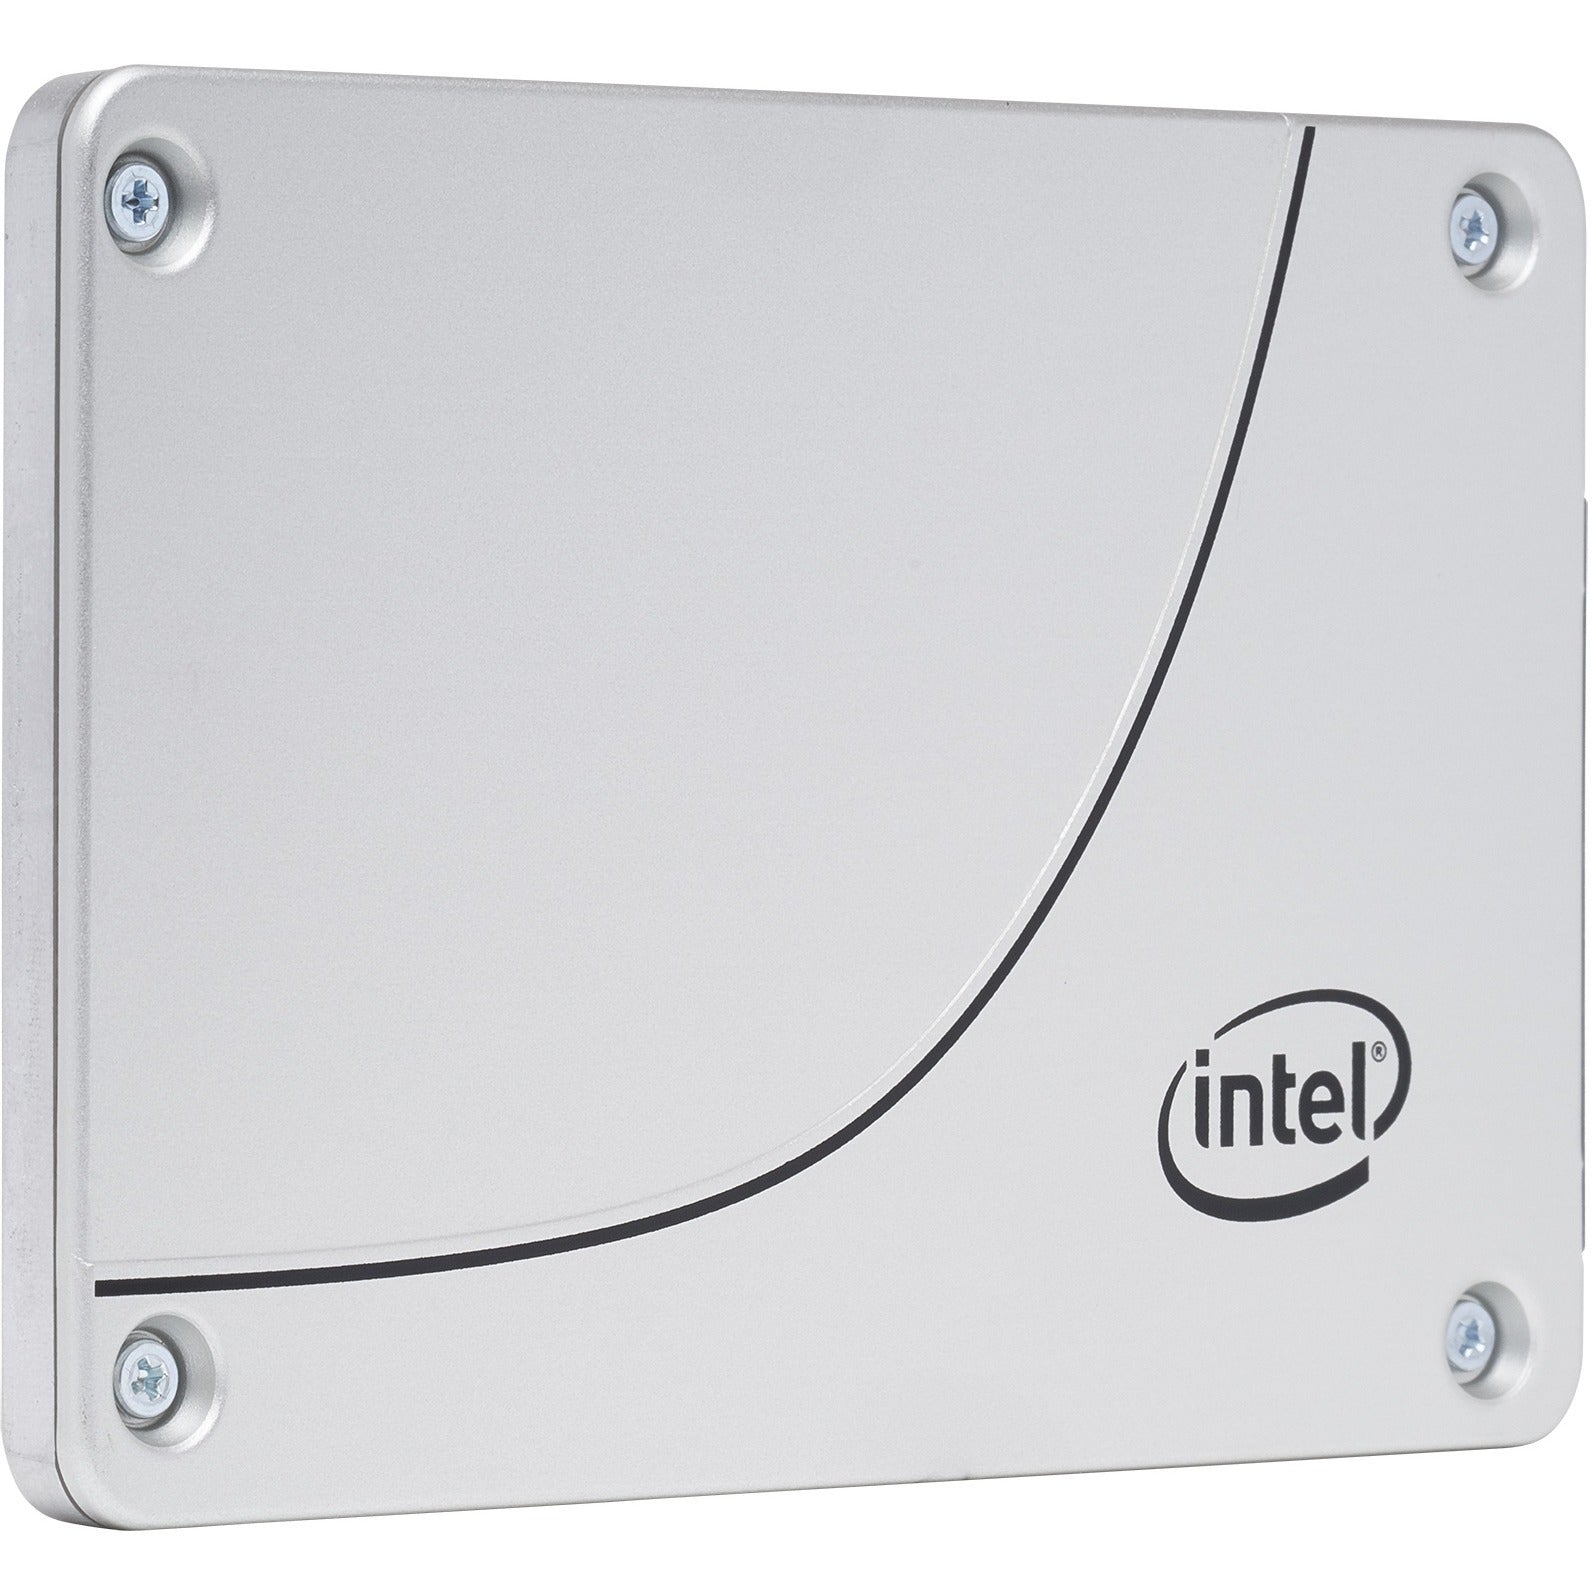 Intel DC S3520 SSDSC2BB480G701 480GB SATA 6Gb/s 2.5" Solid State Drive